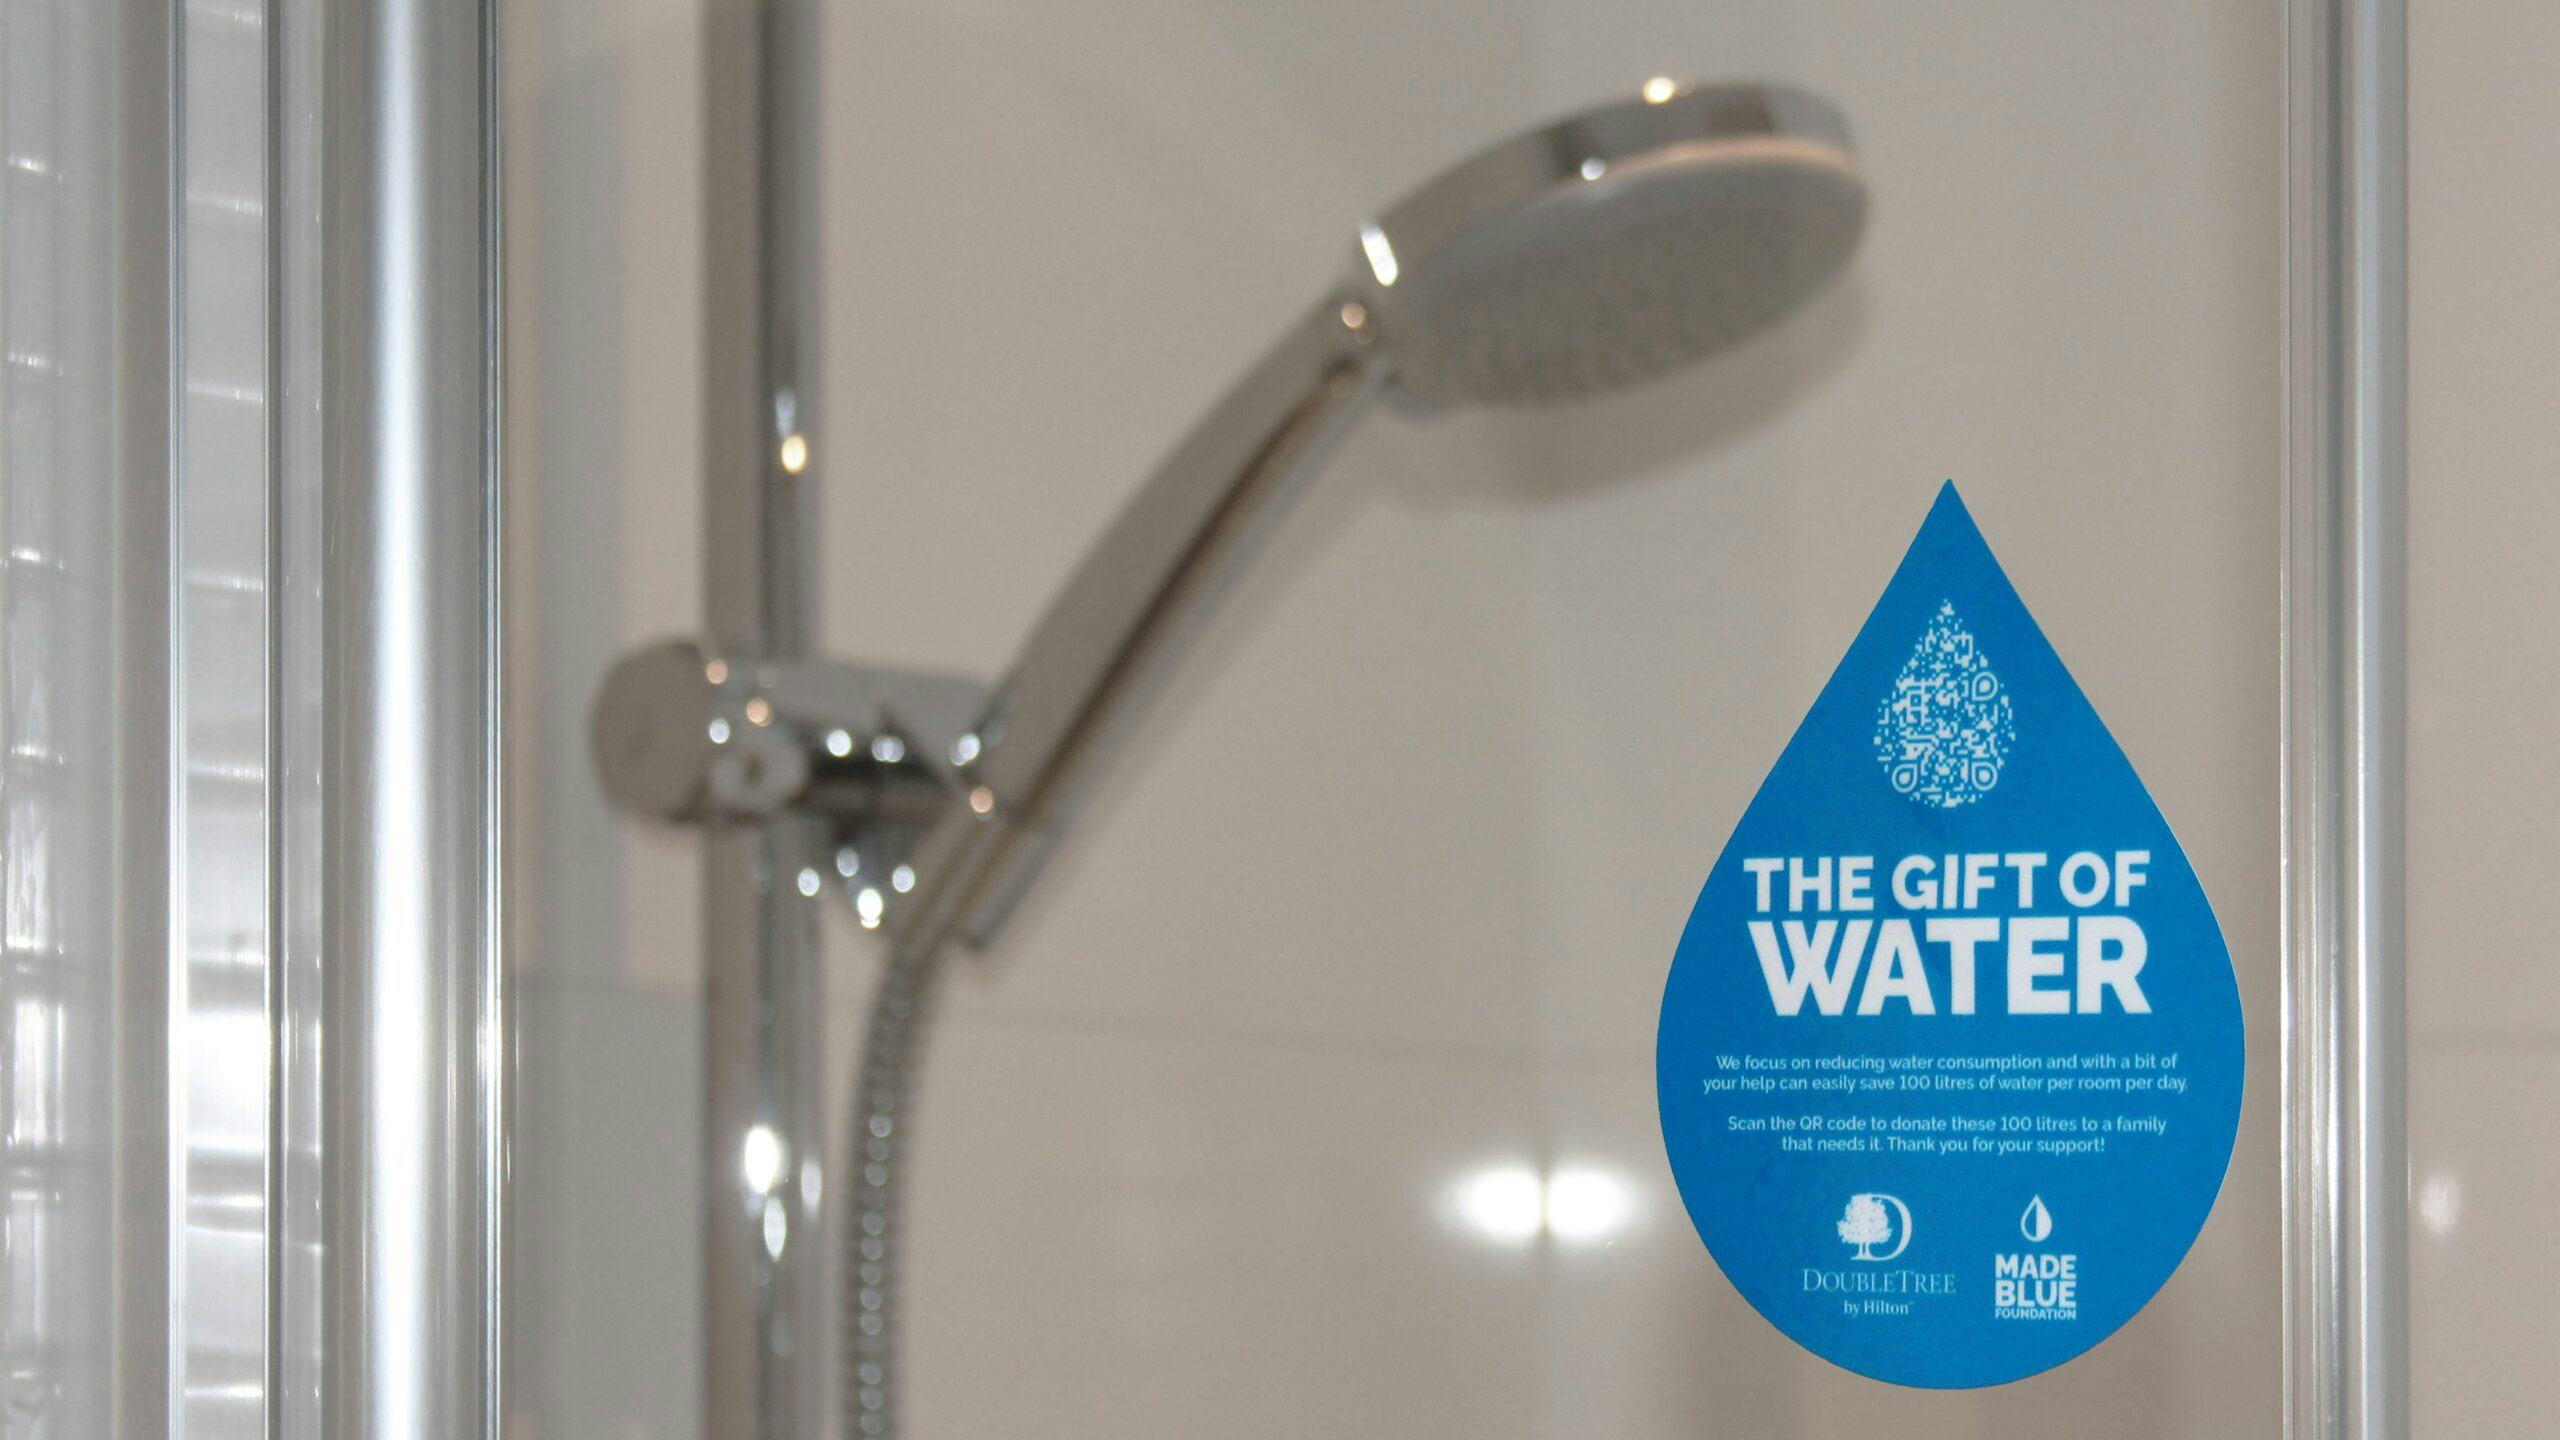 Amsterdams hotel doneert per overnachting 100 liter water aan goed doel